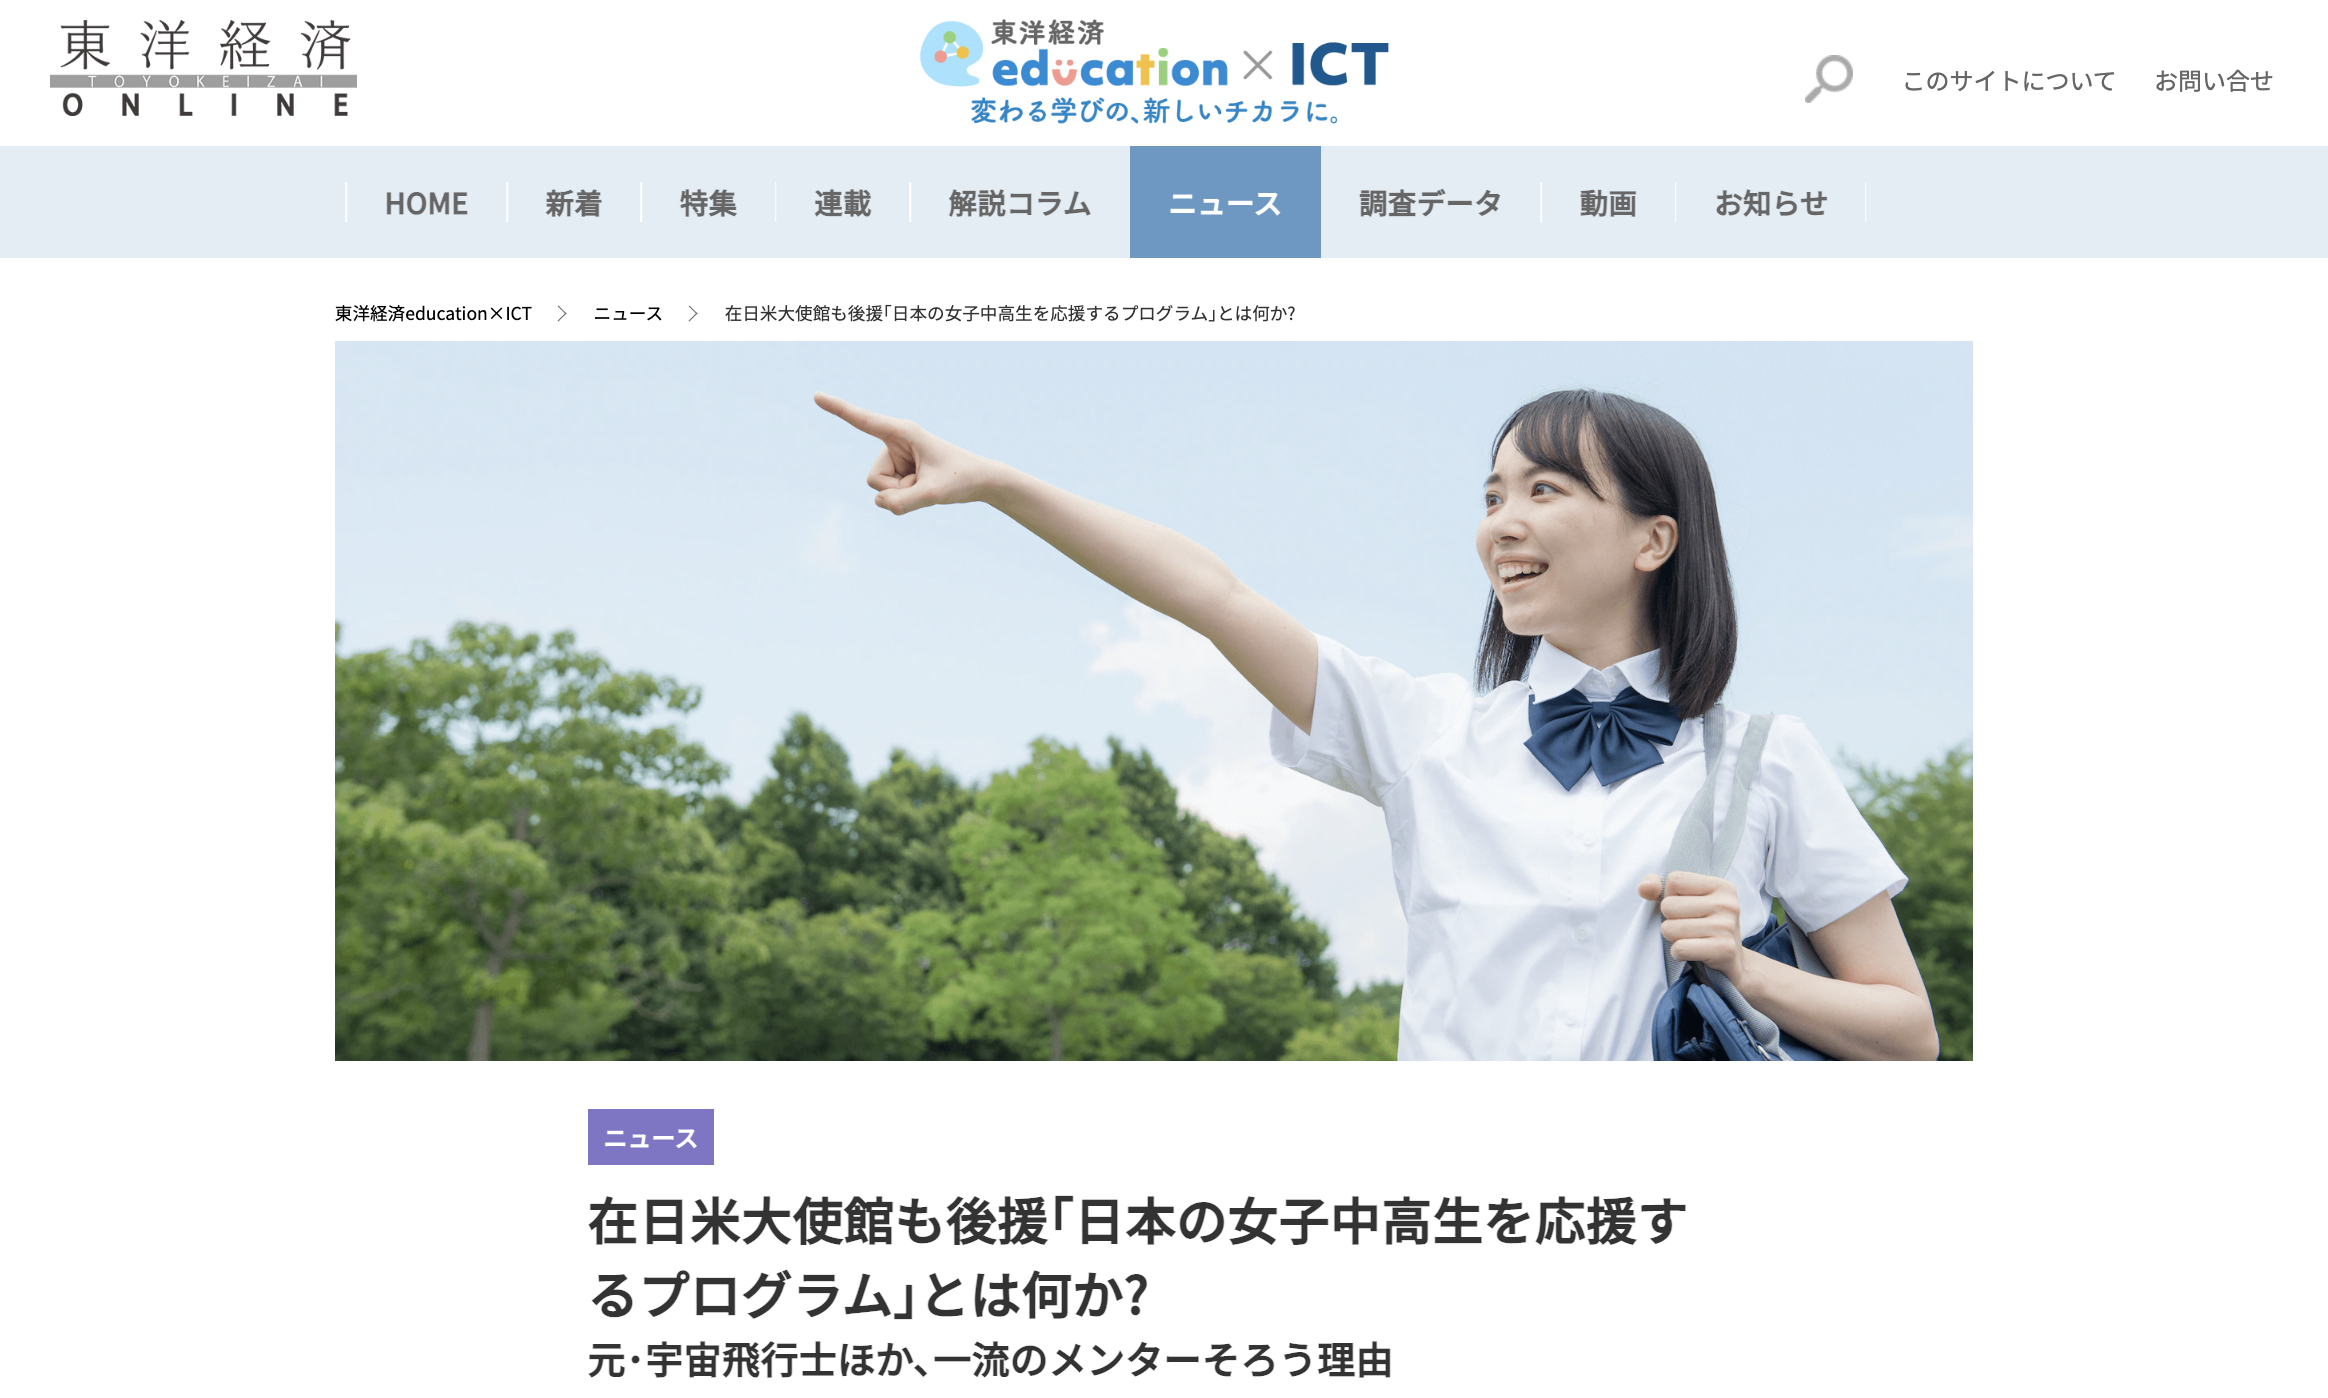 【掲載報告】東洋経済education×ICT「在日米大使館も後援｢日本の女子中高生を応援するプログラム｣とは何か?」